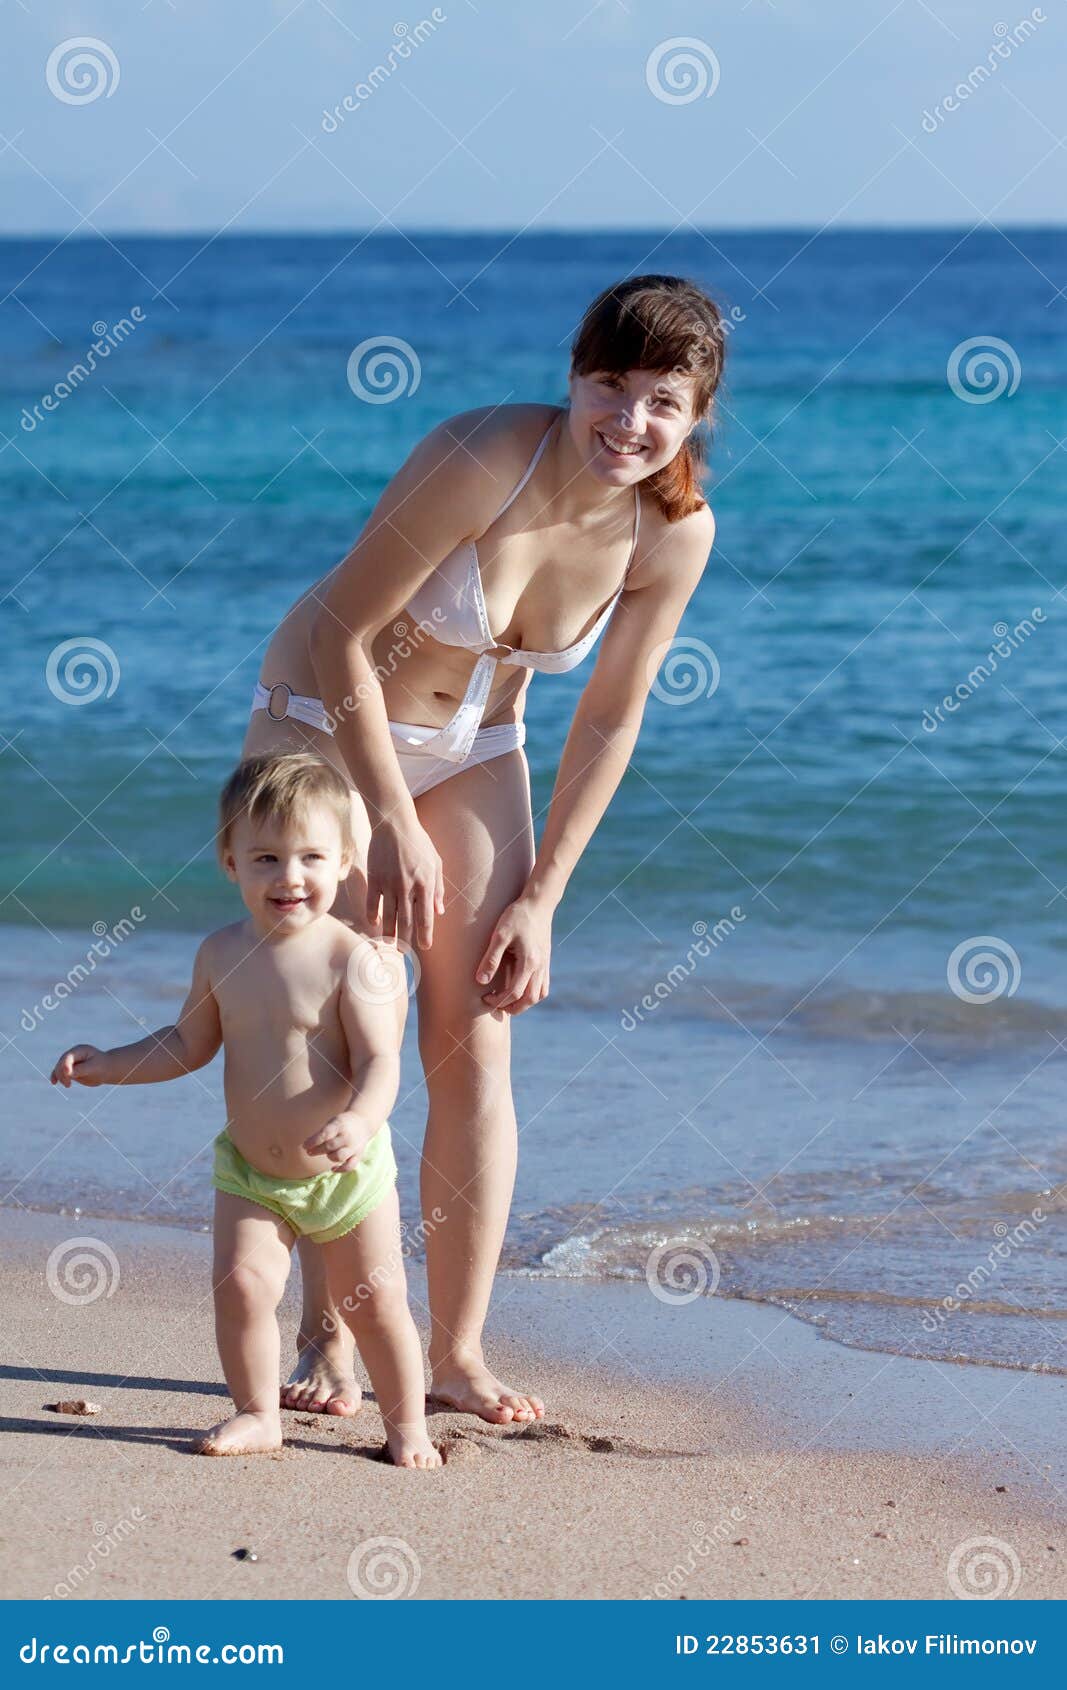 за голыми детьми на пляже фото 82